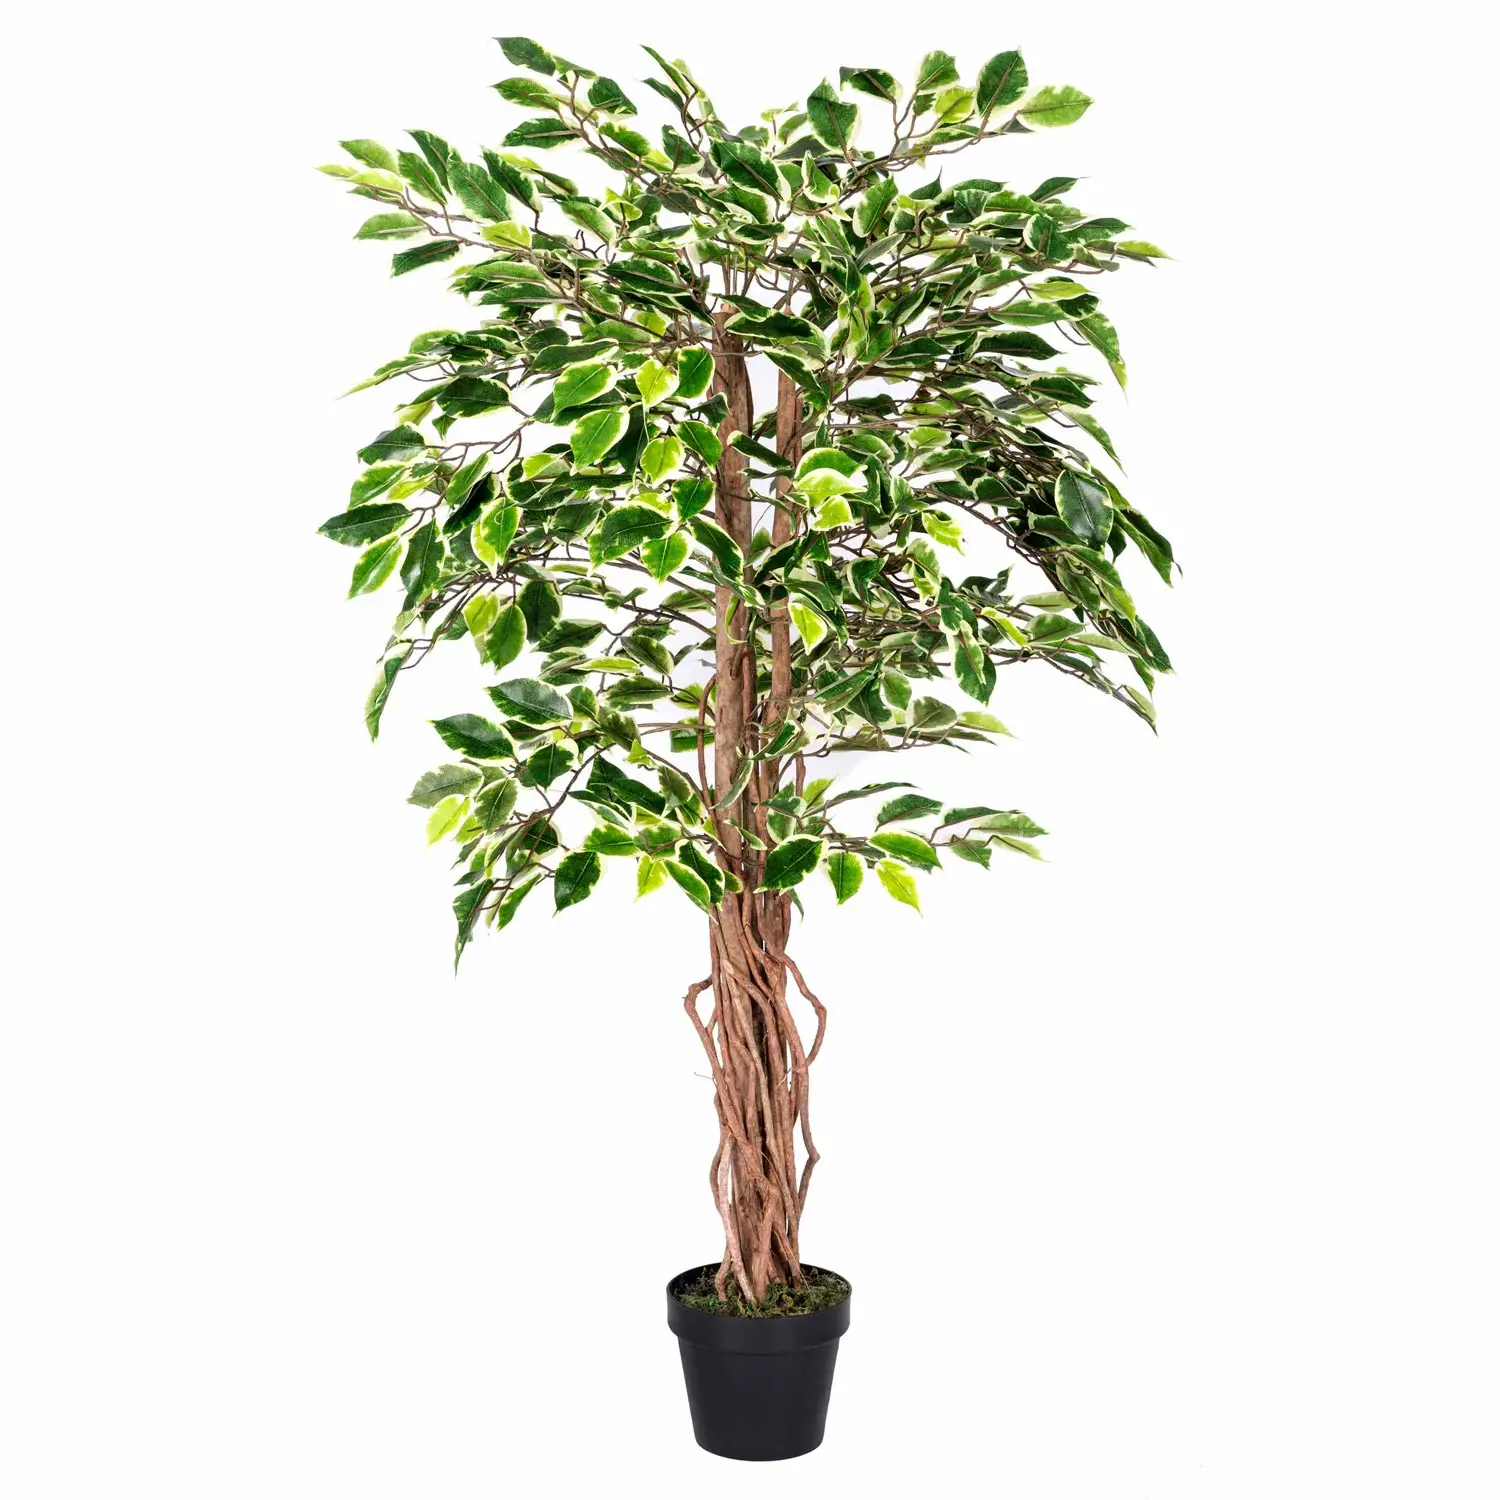 Kunstbaum Ficus Benjamini gr眉n wei脽